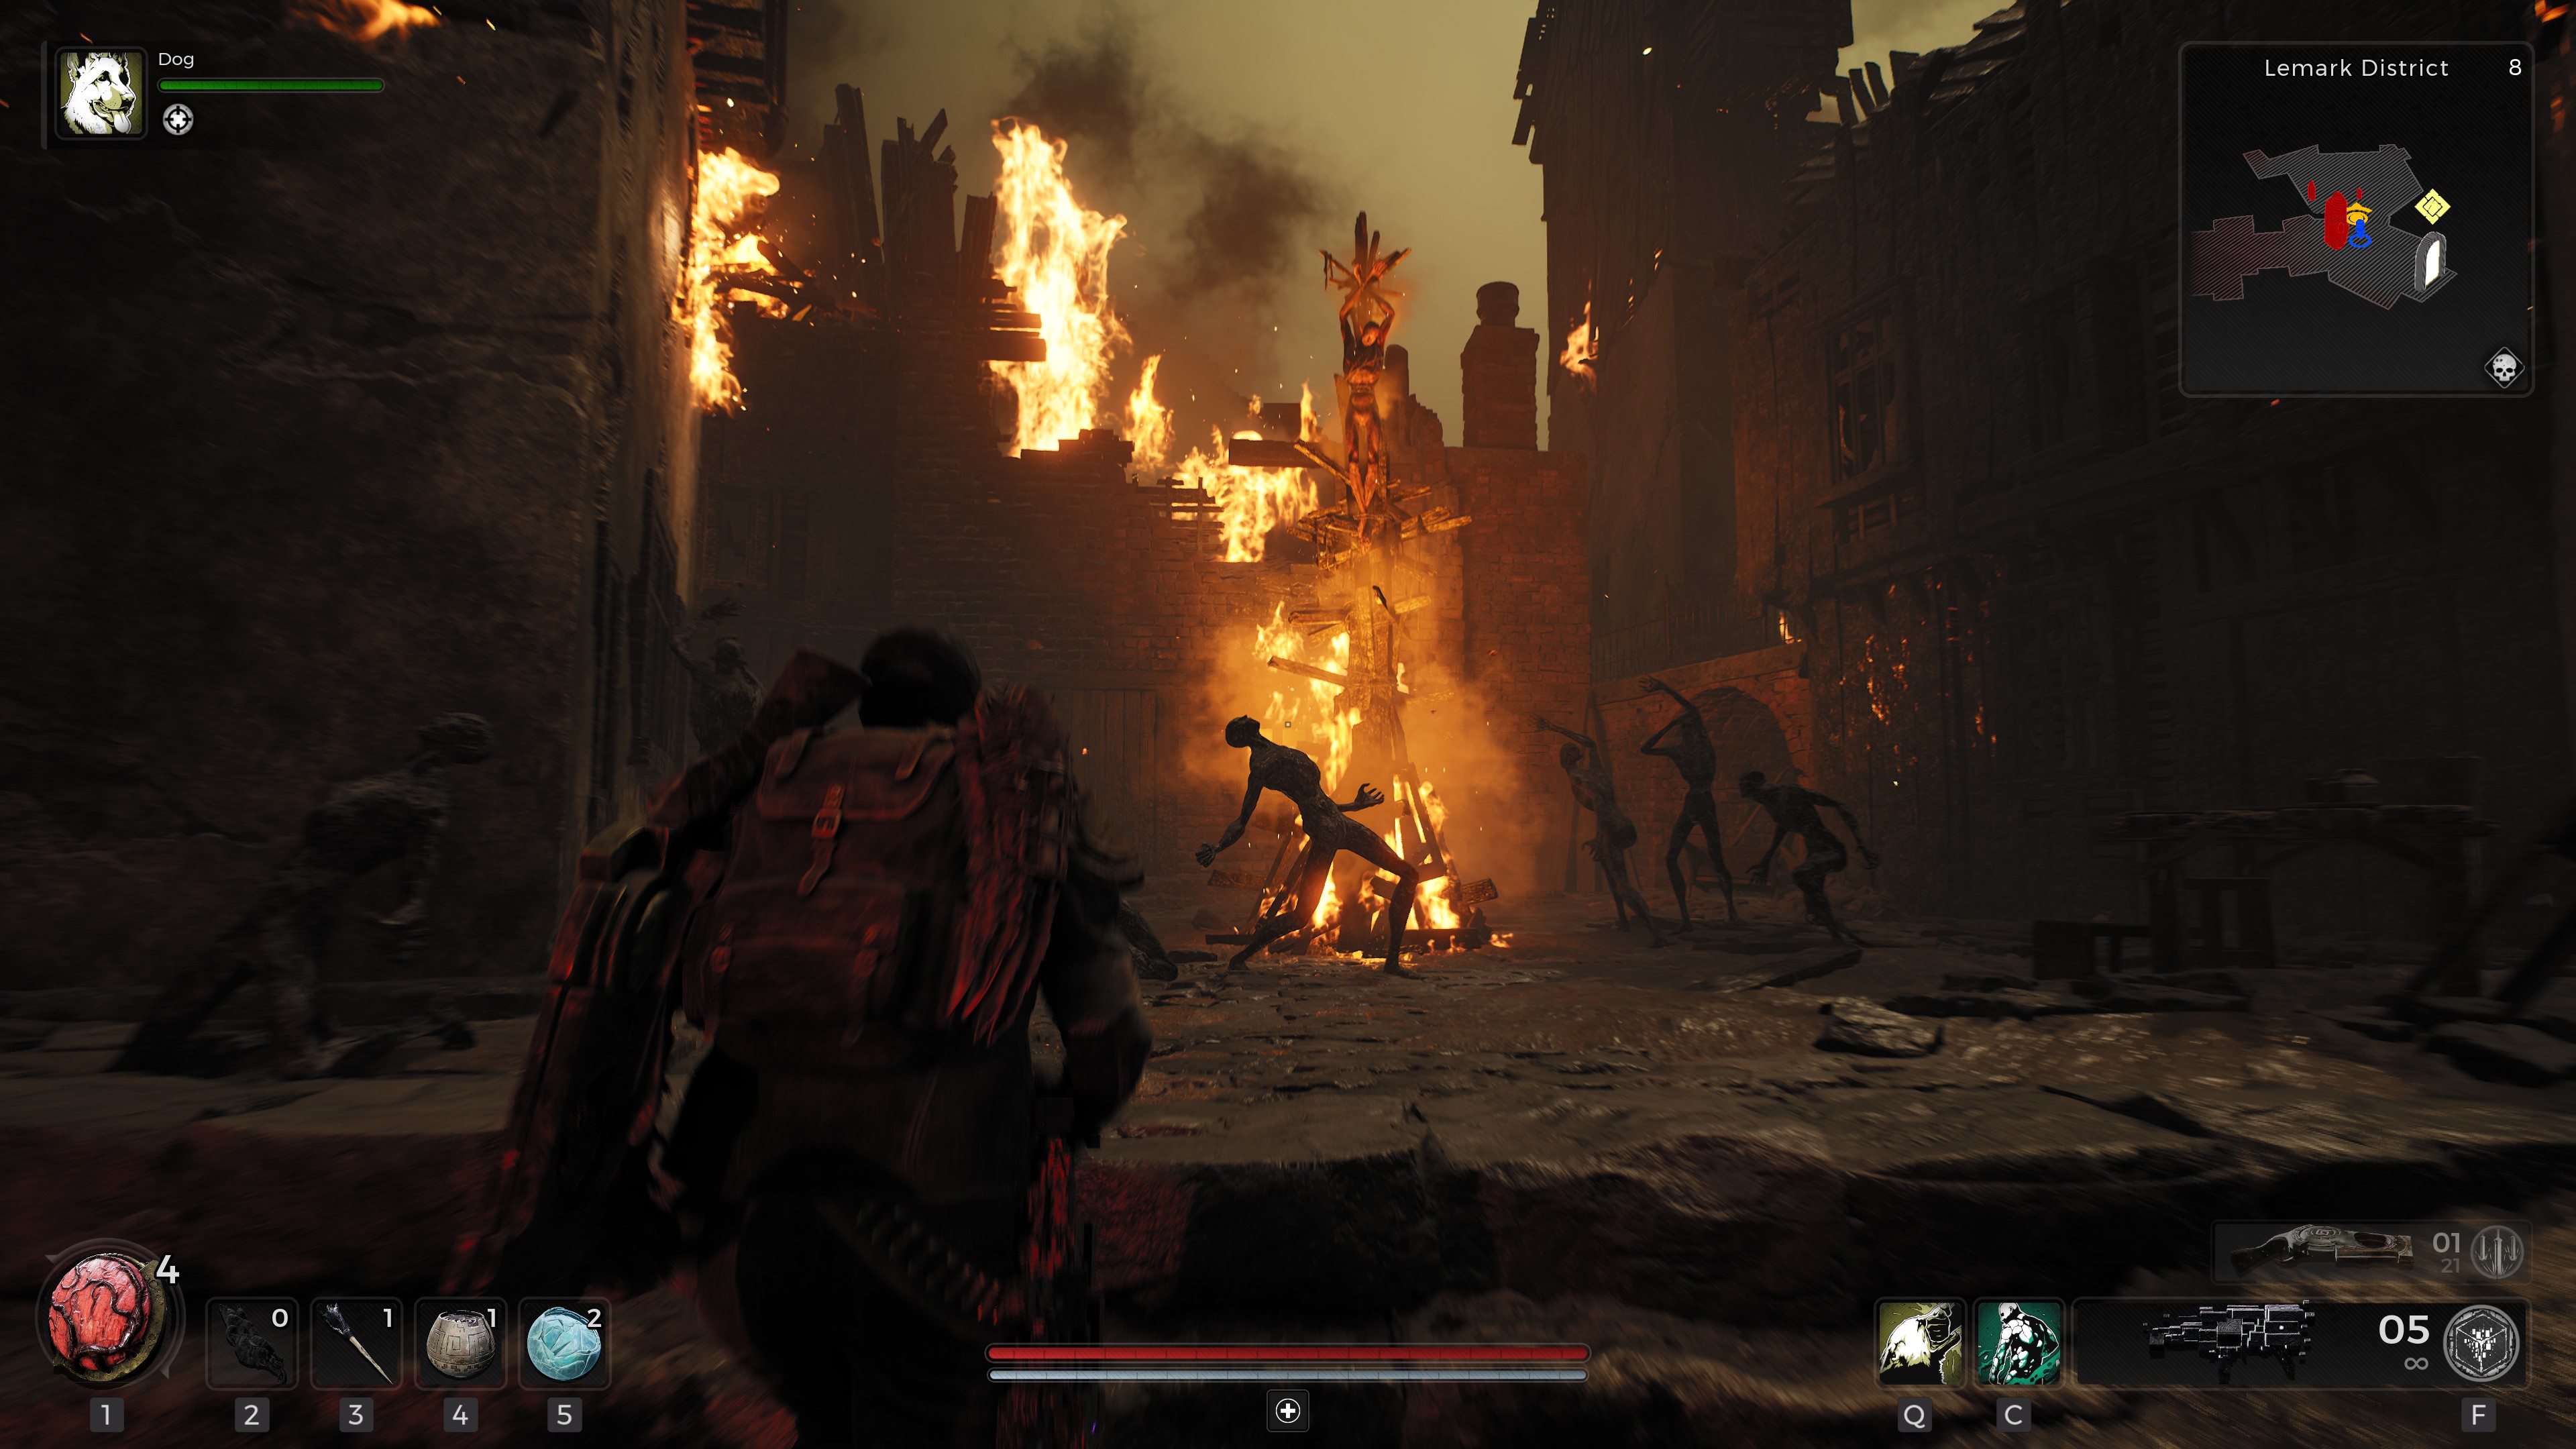 Le joueur entrant dans une ville en ruine et en flammes dans Remnant 2.